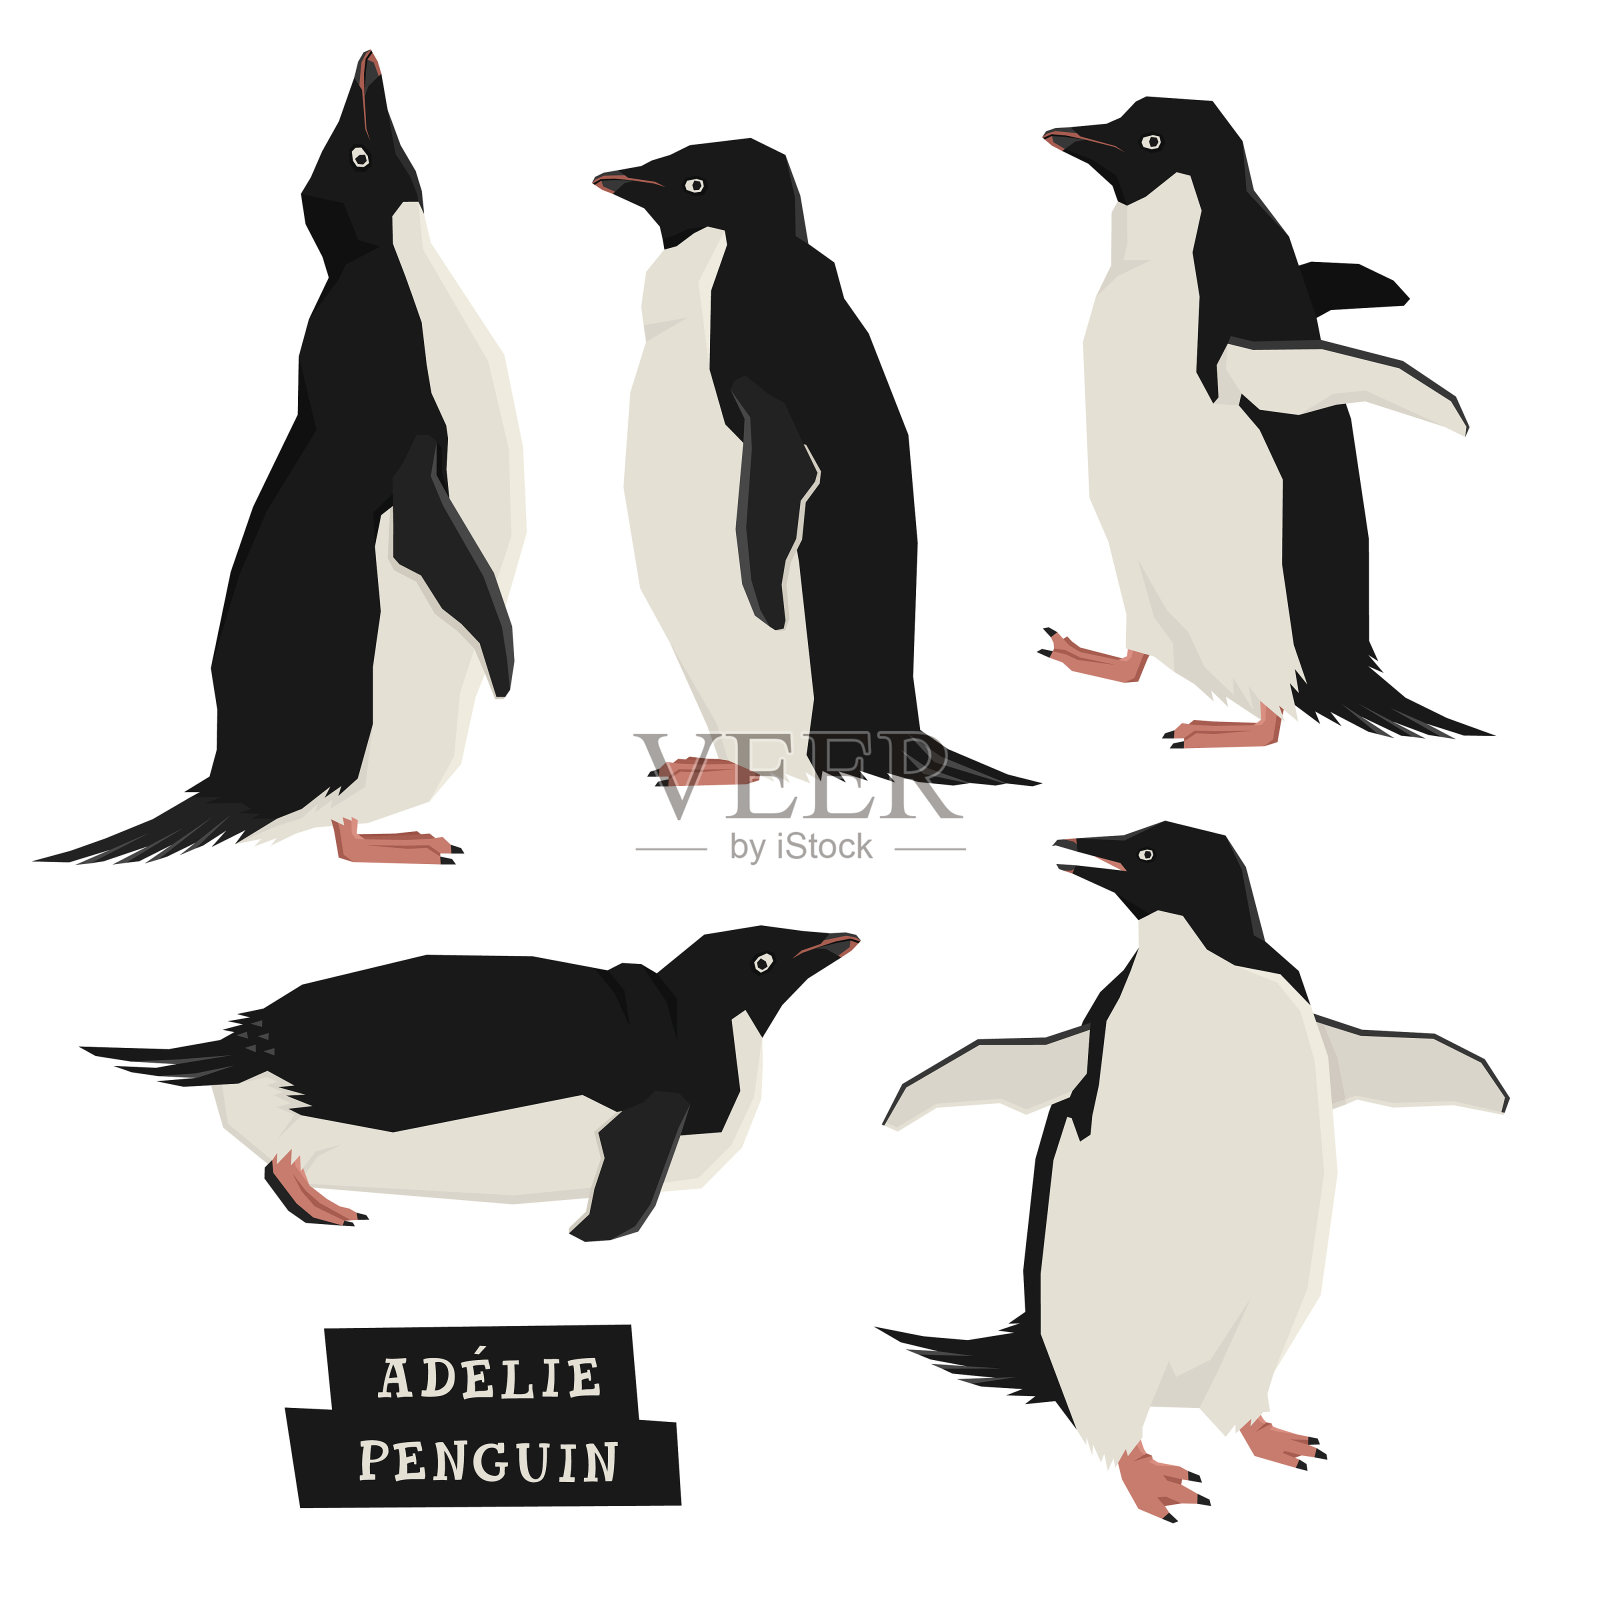 企鹅几何风格插画图片素材